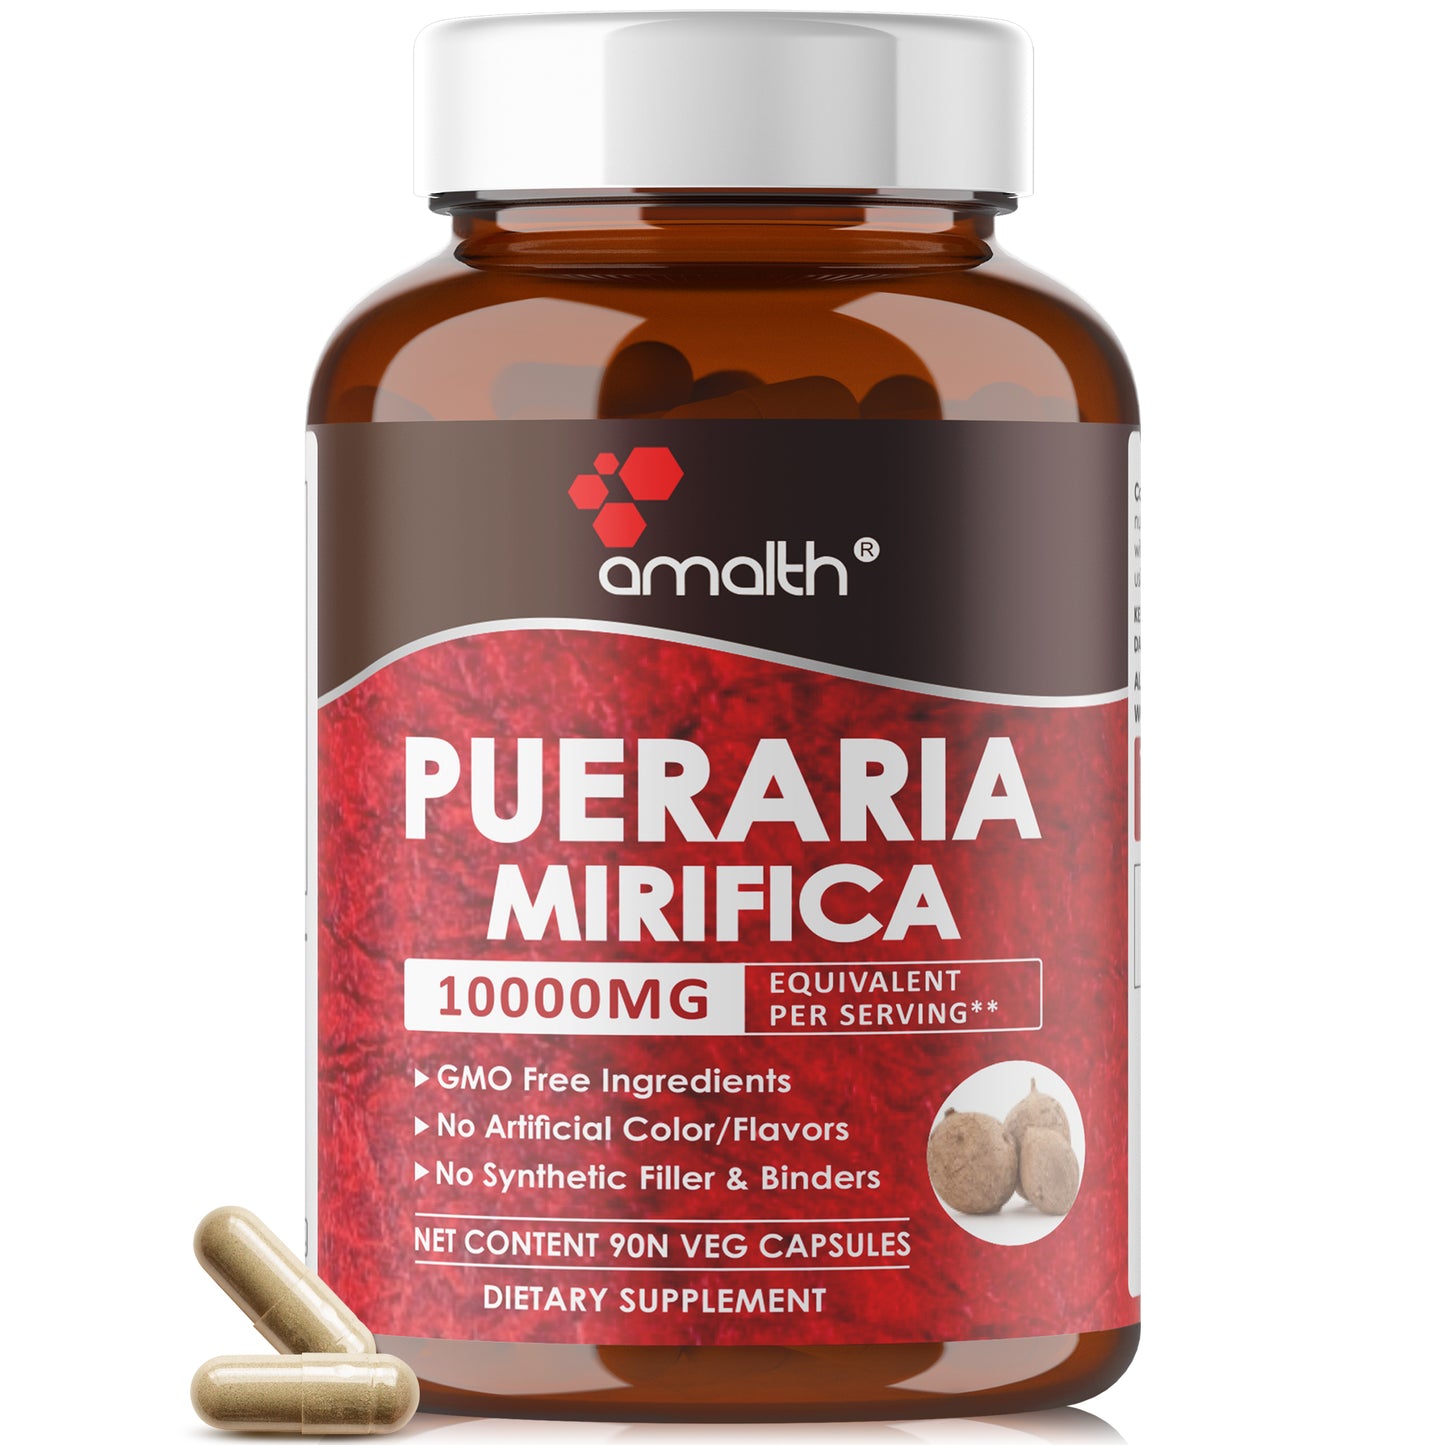 Pueraria Mirifica Extract Powder 90 Capsules